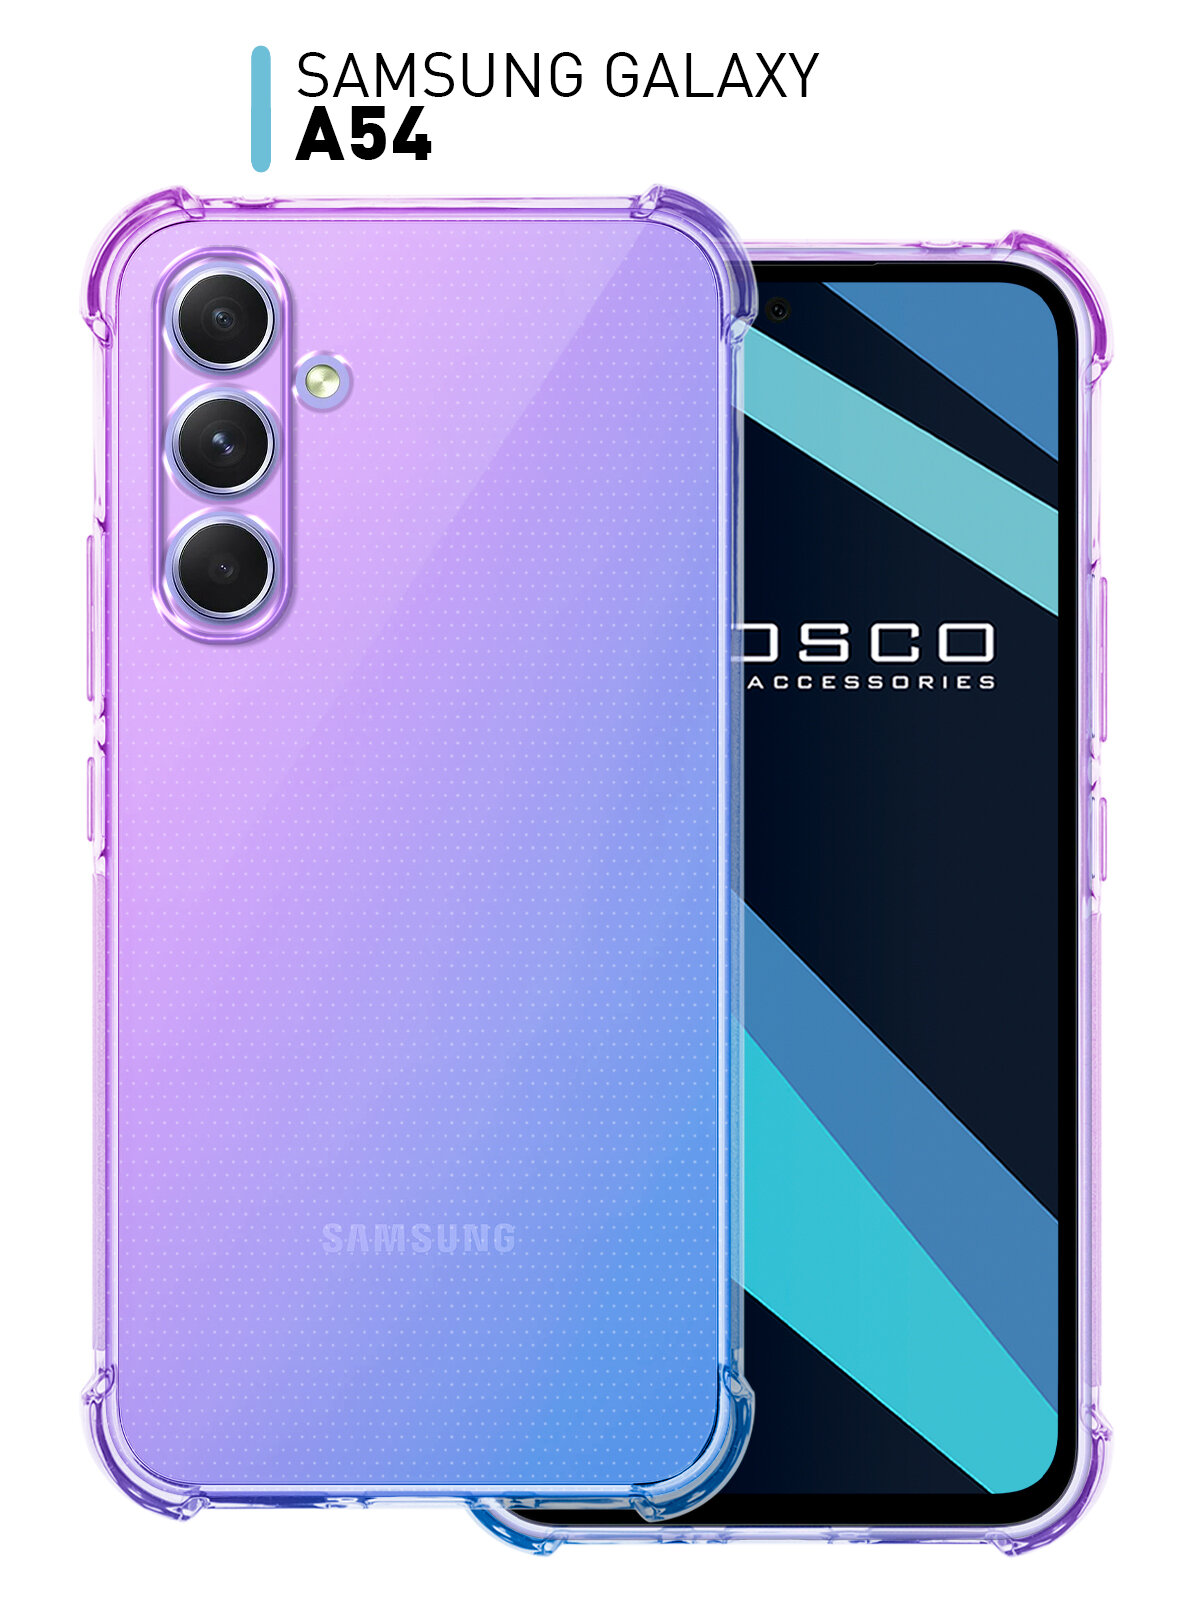 Противоударный чехол ROSCO на Samsung Galaxy A54 (Самсунг Галакси А54) усиленный, силиконовый чехол, защита модуля камер, прозрачный, фиолетовый синий